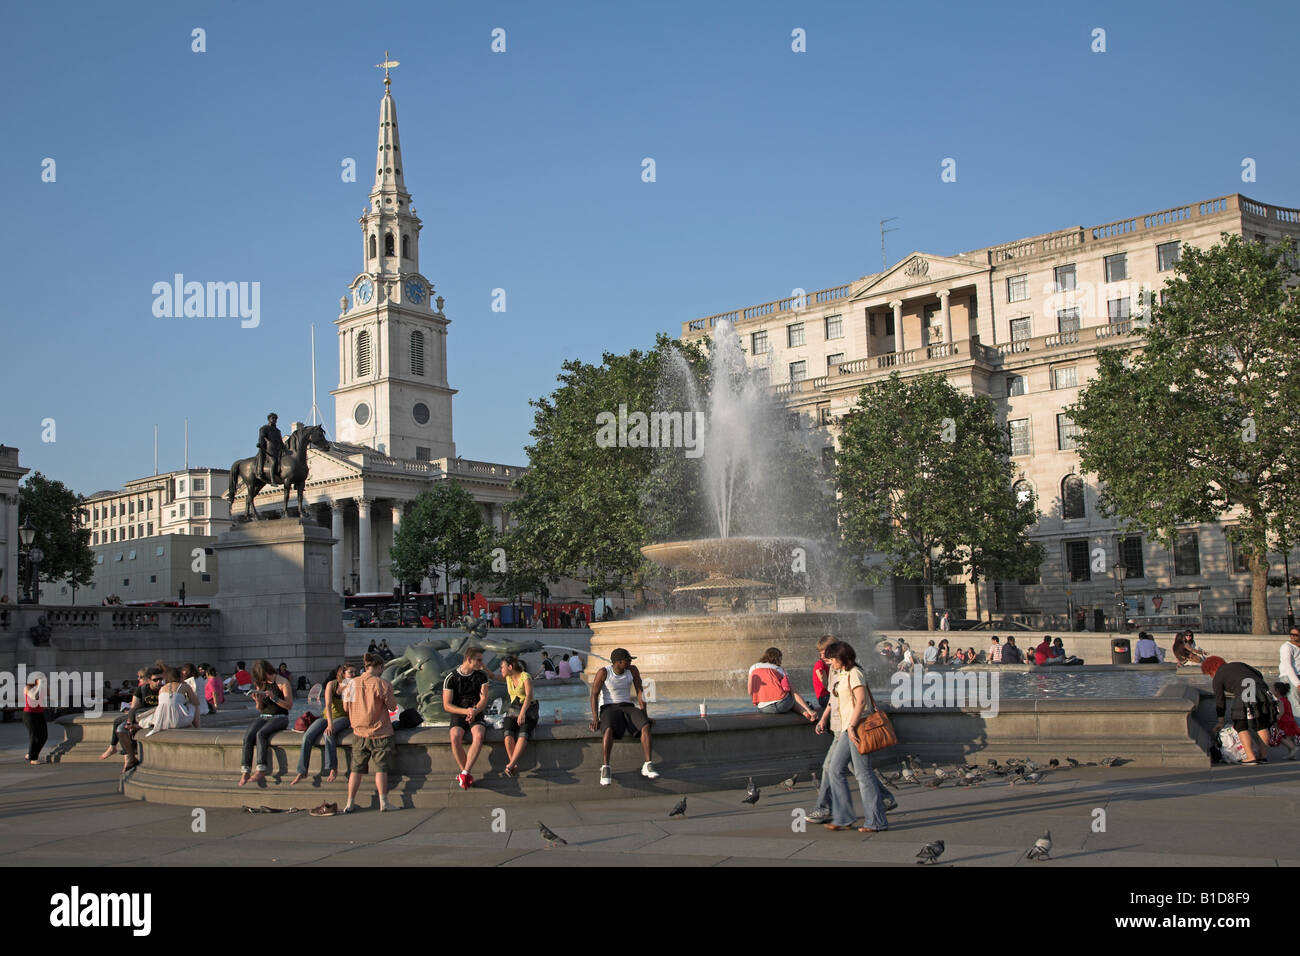 Fontaines de Trafalgar Square et de Saint Martin dans le domaine de l'église, Londres, Angleterre Banque D'Images